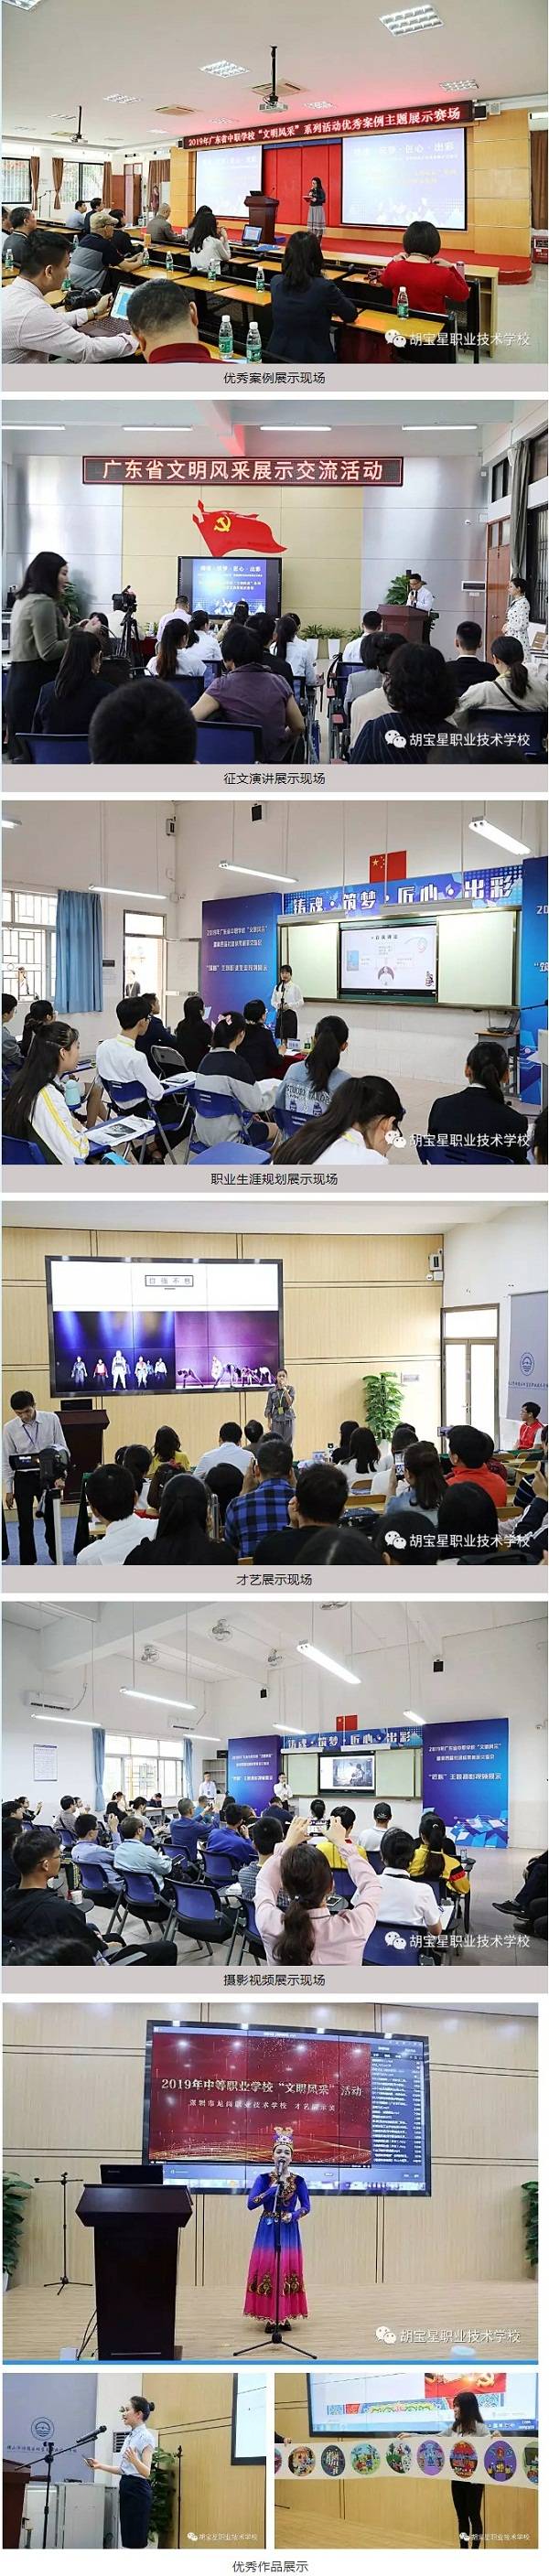 中国职业教育2.jpg